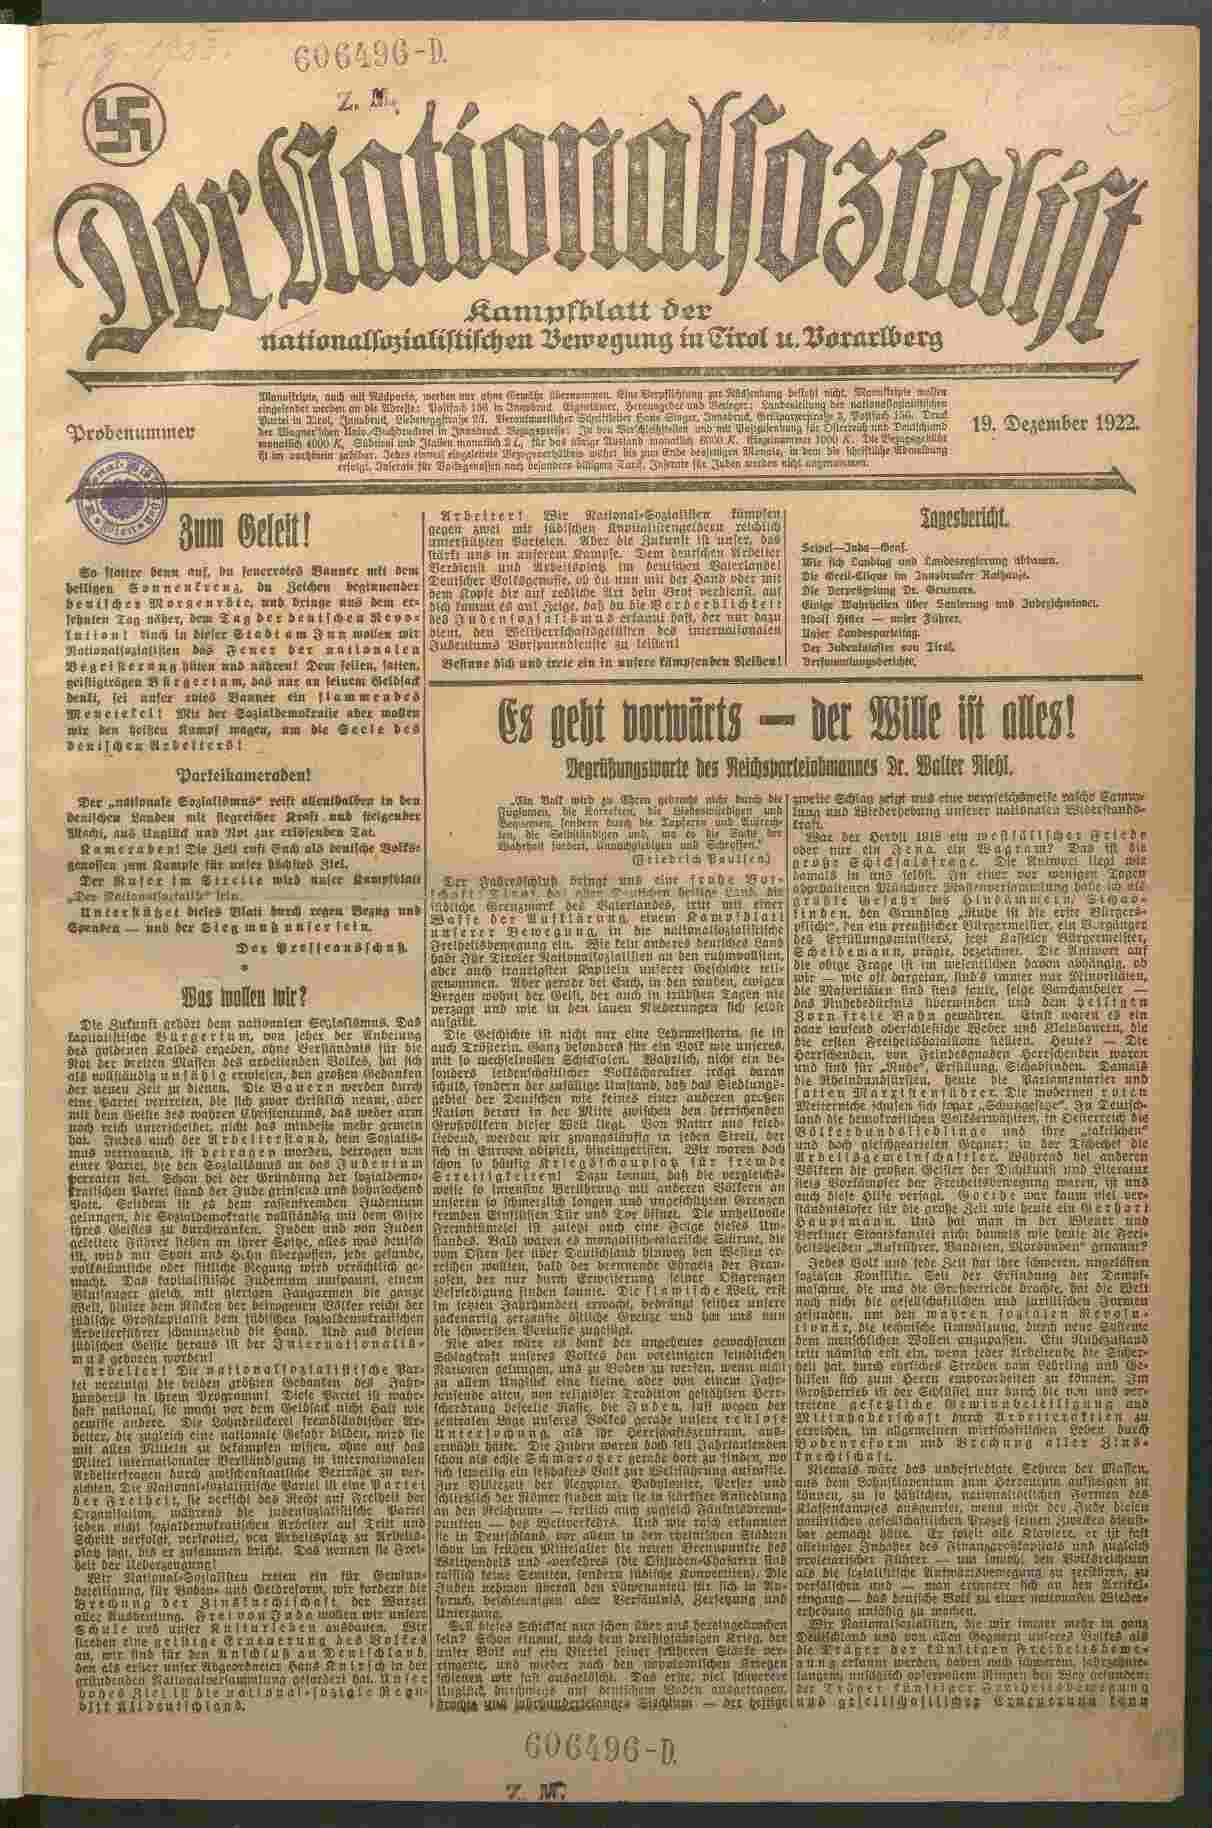 Der Nationalsozialist, 19.12.1922, S.1, ANNO/ÖNB